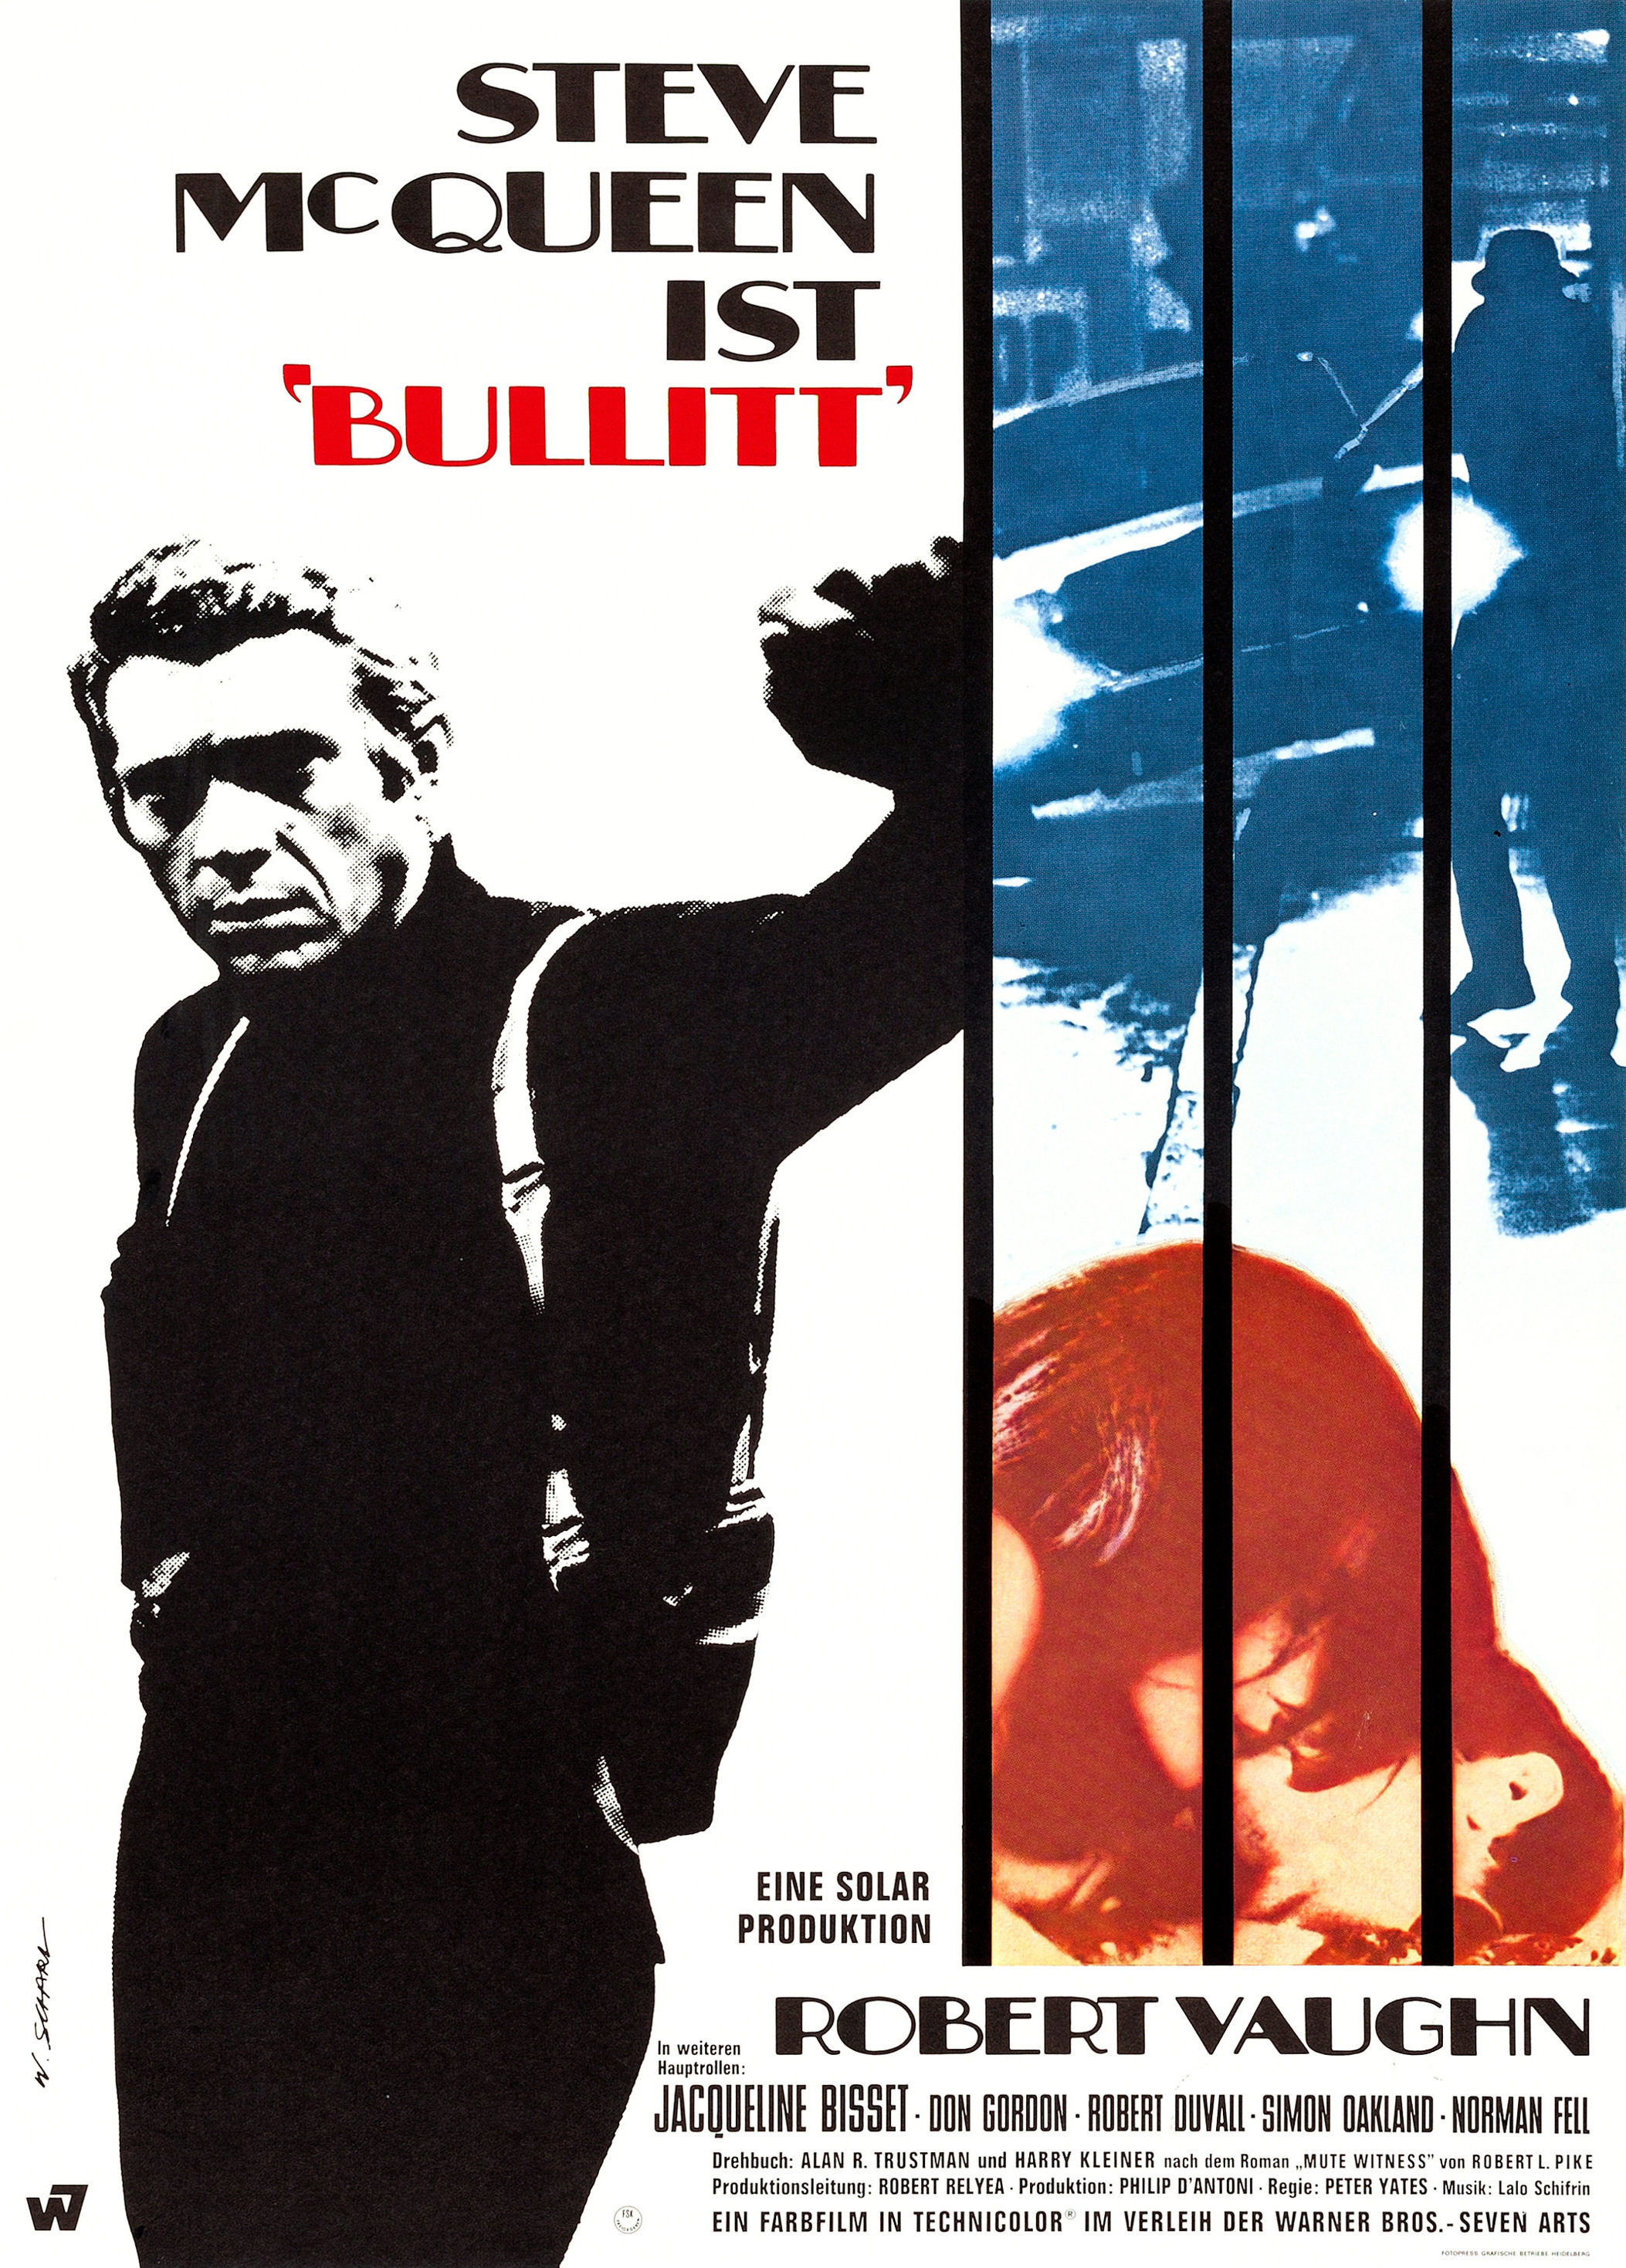 Mega Sized Movie Poster Image for Bullitt (#16 of 19)